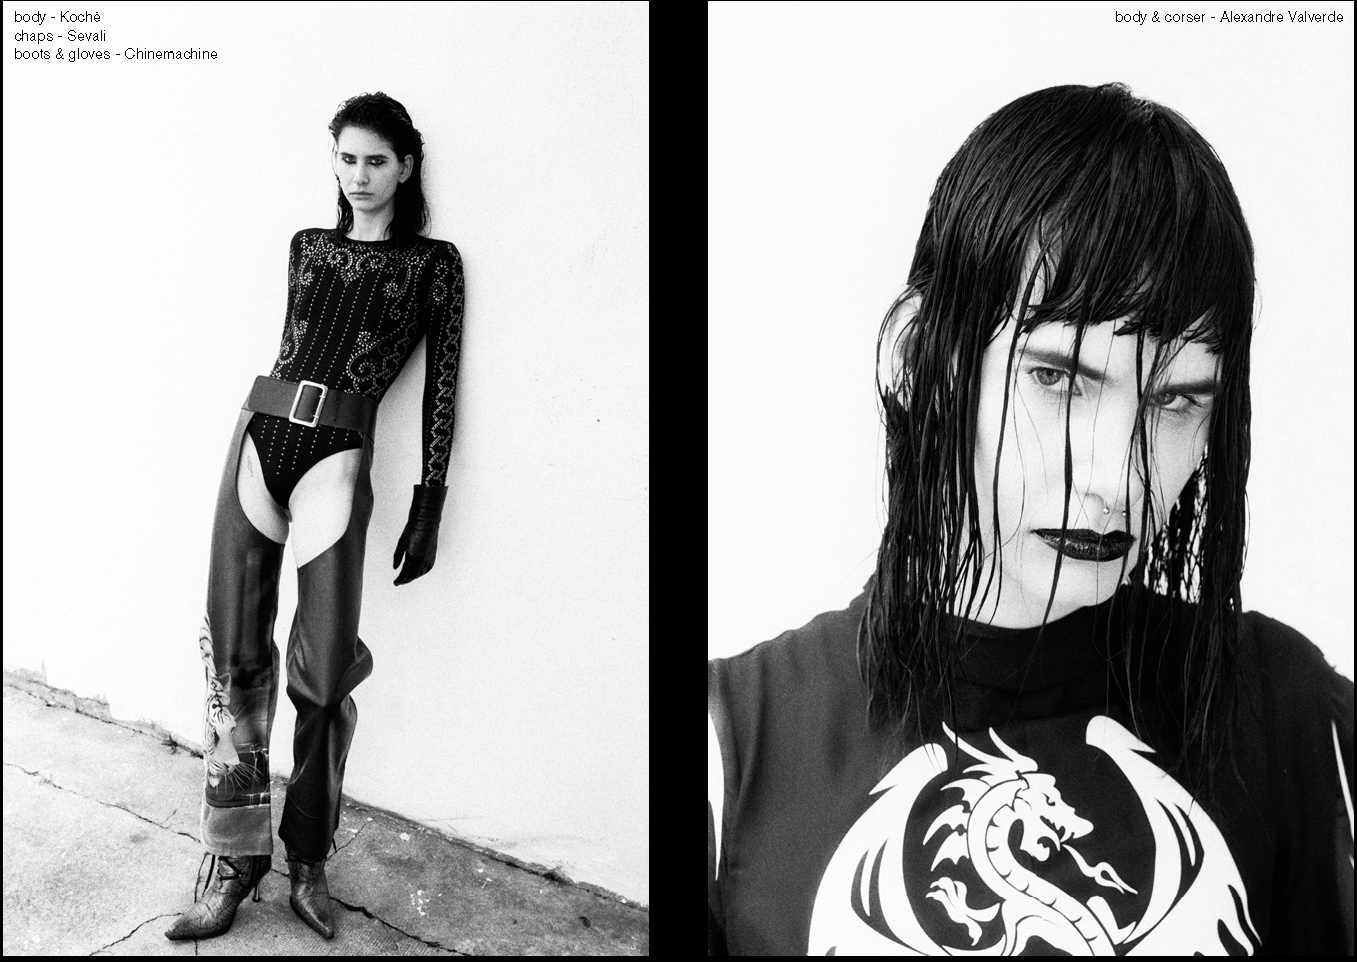 Bad to the Bone - Niki - Photo - Herve Coutin & Style - Alejandra Perez